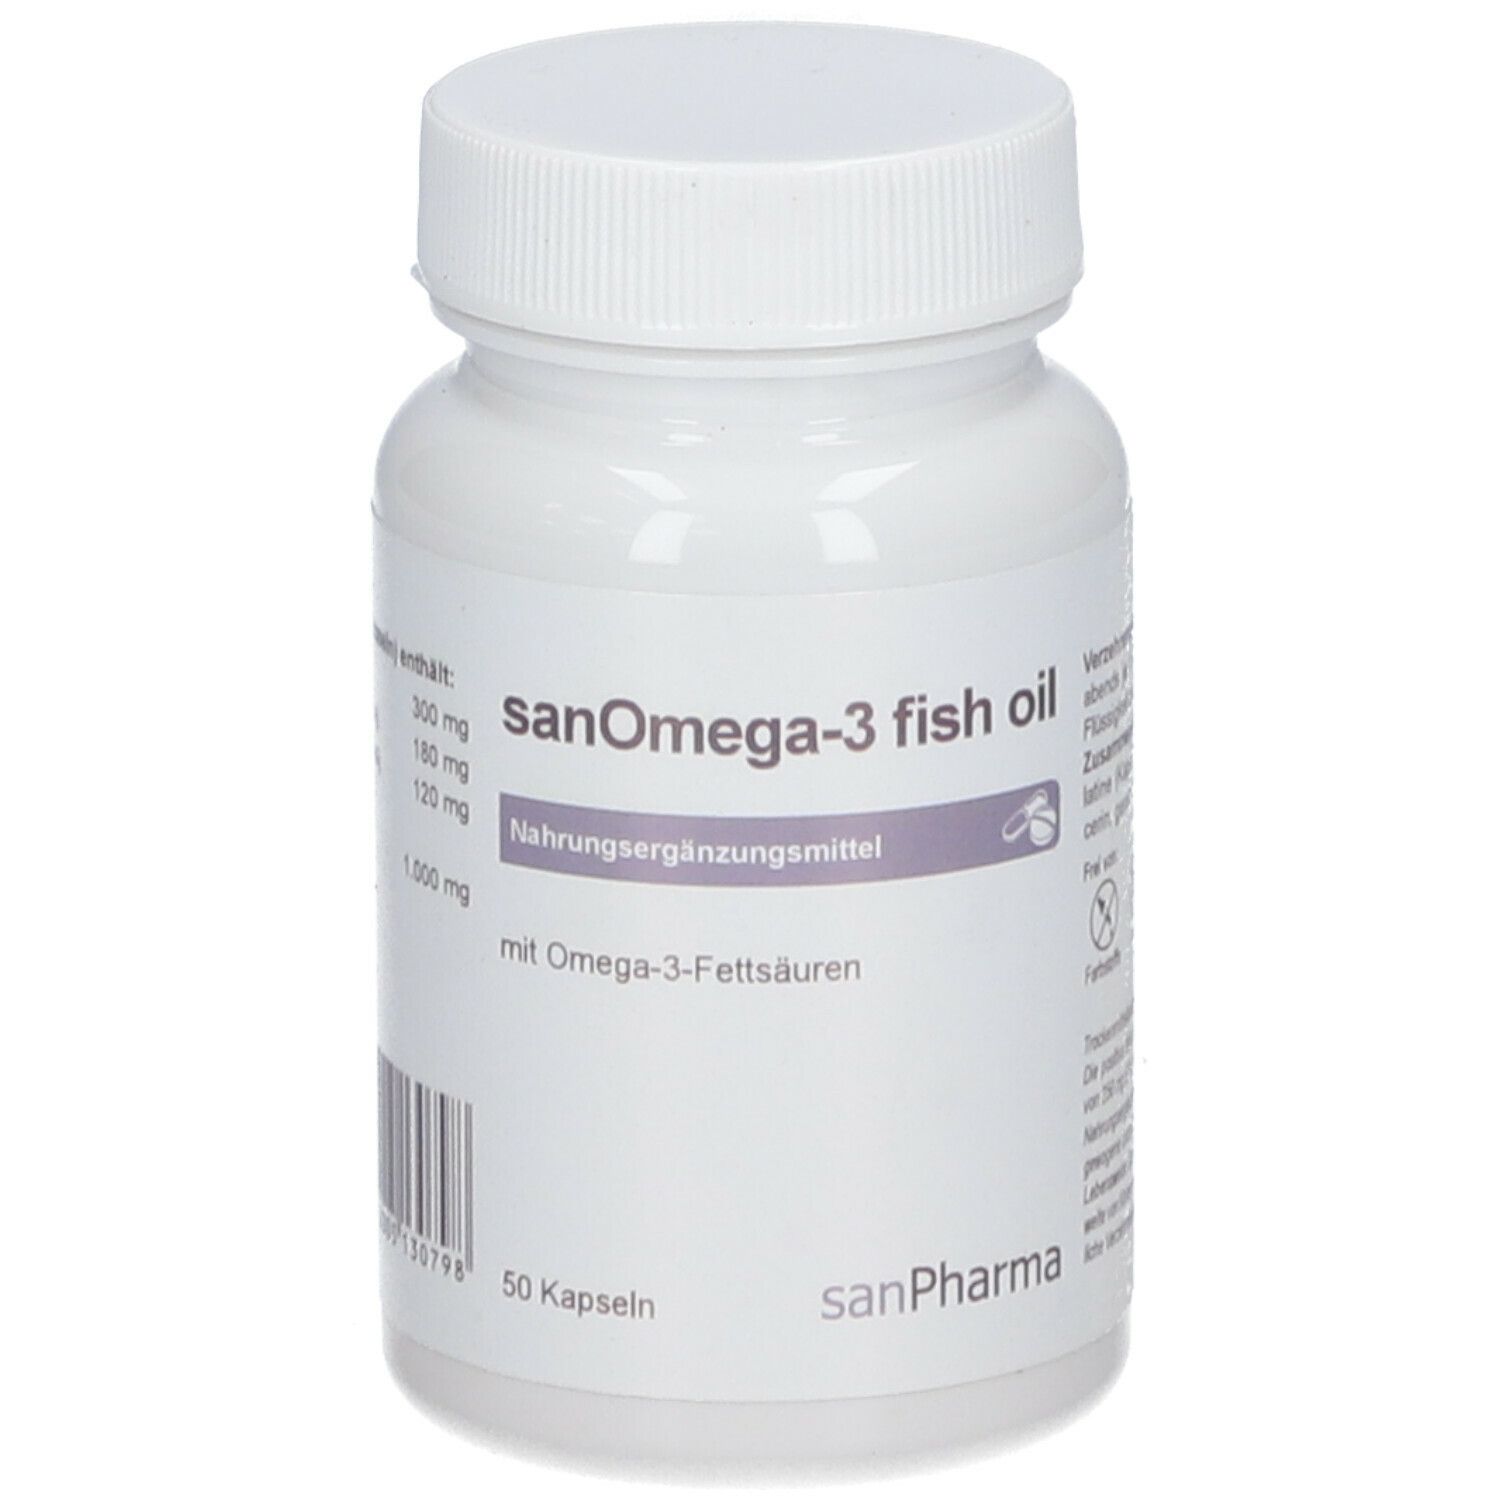 sanOmega-3 fish oil